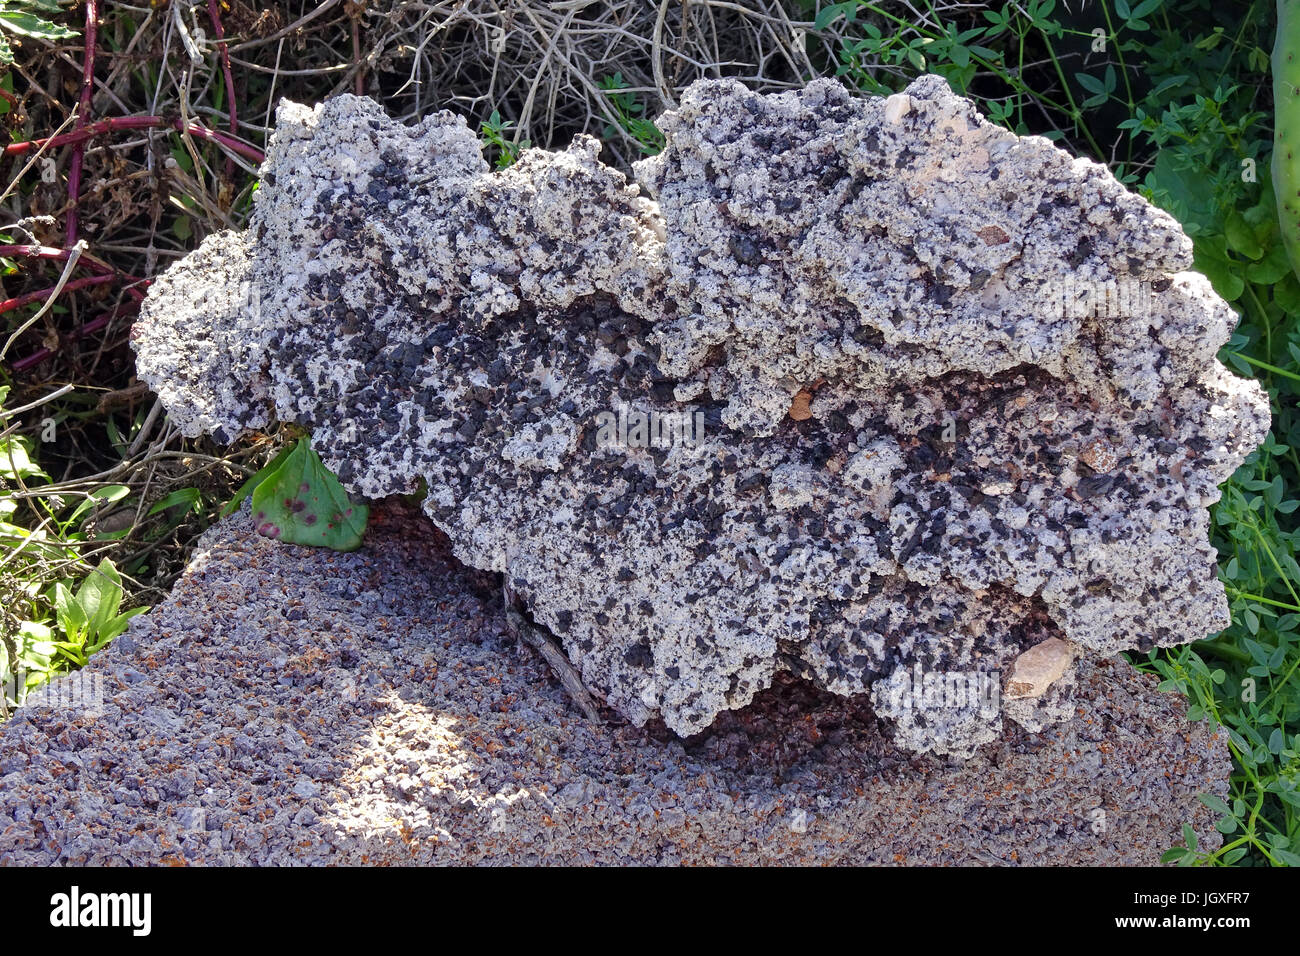 Stein mit Lavaeinschluessen, La Geria, Lanzarote, Kanarische Inseln, Europa | Stone with lava particles, La Geria, Lanzarote, Canary islands, Europe Stock Photo